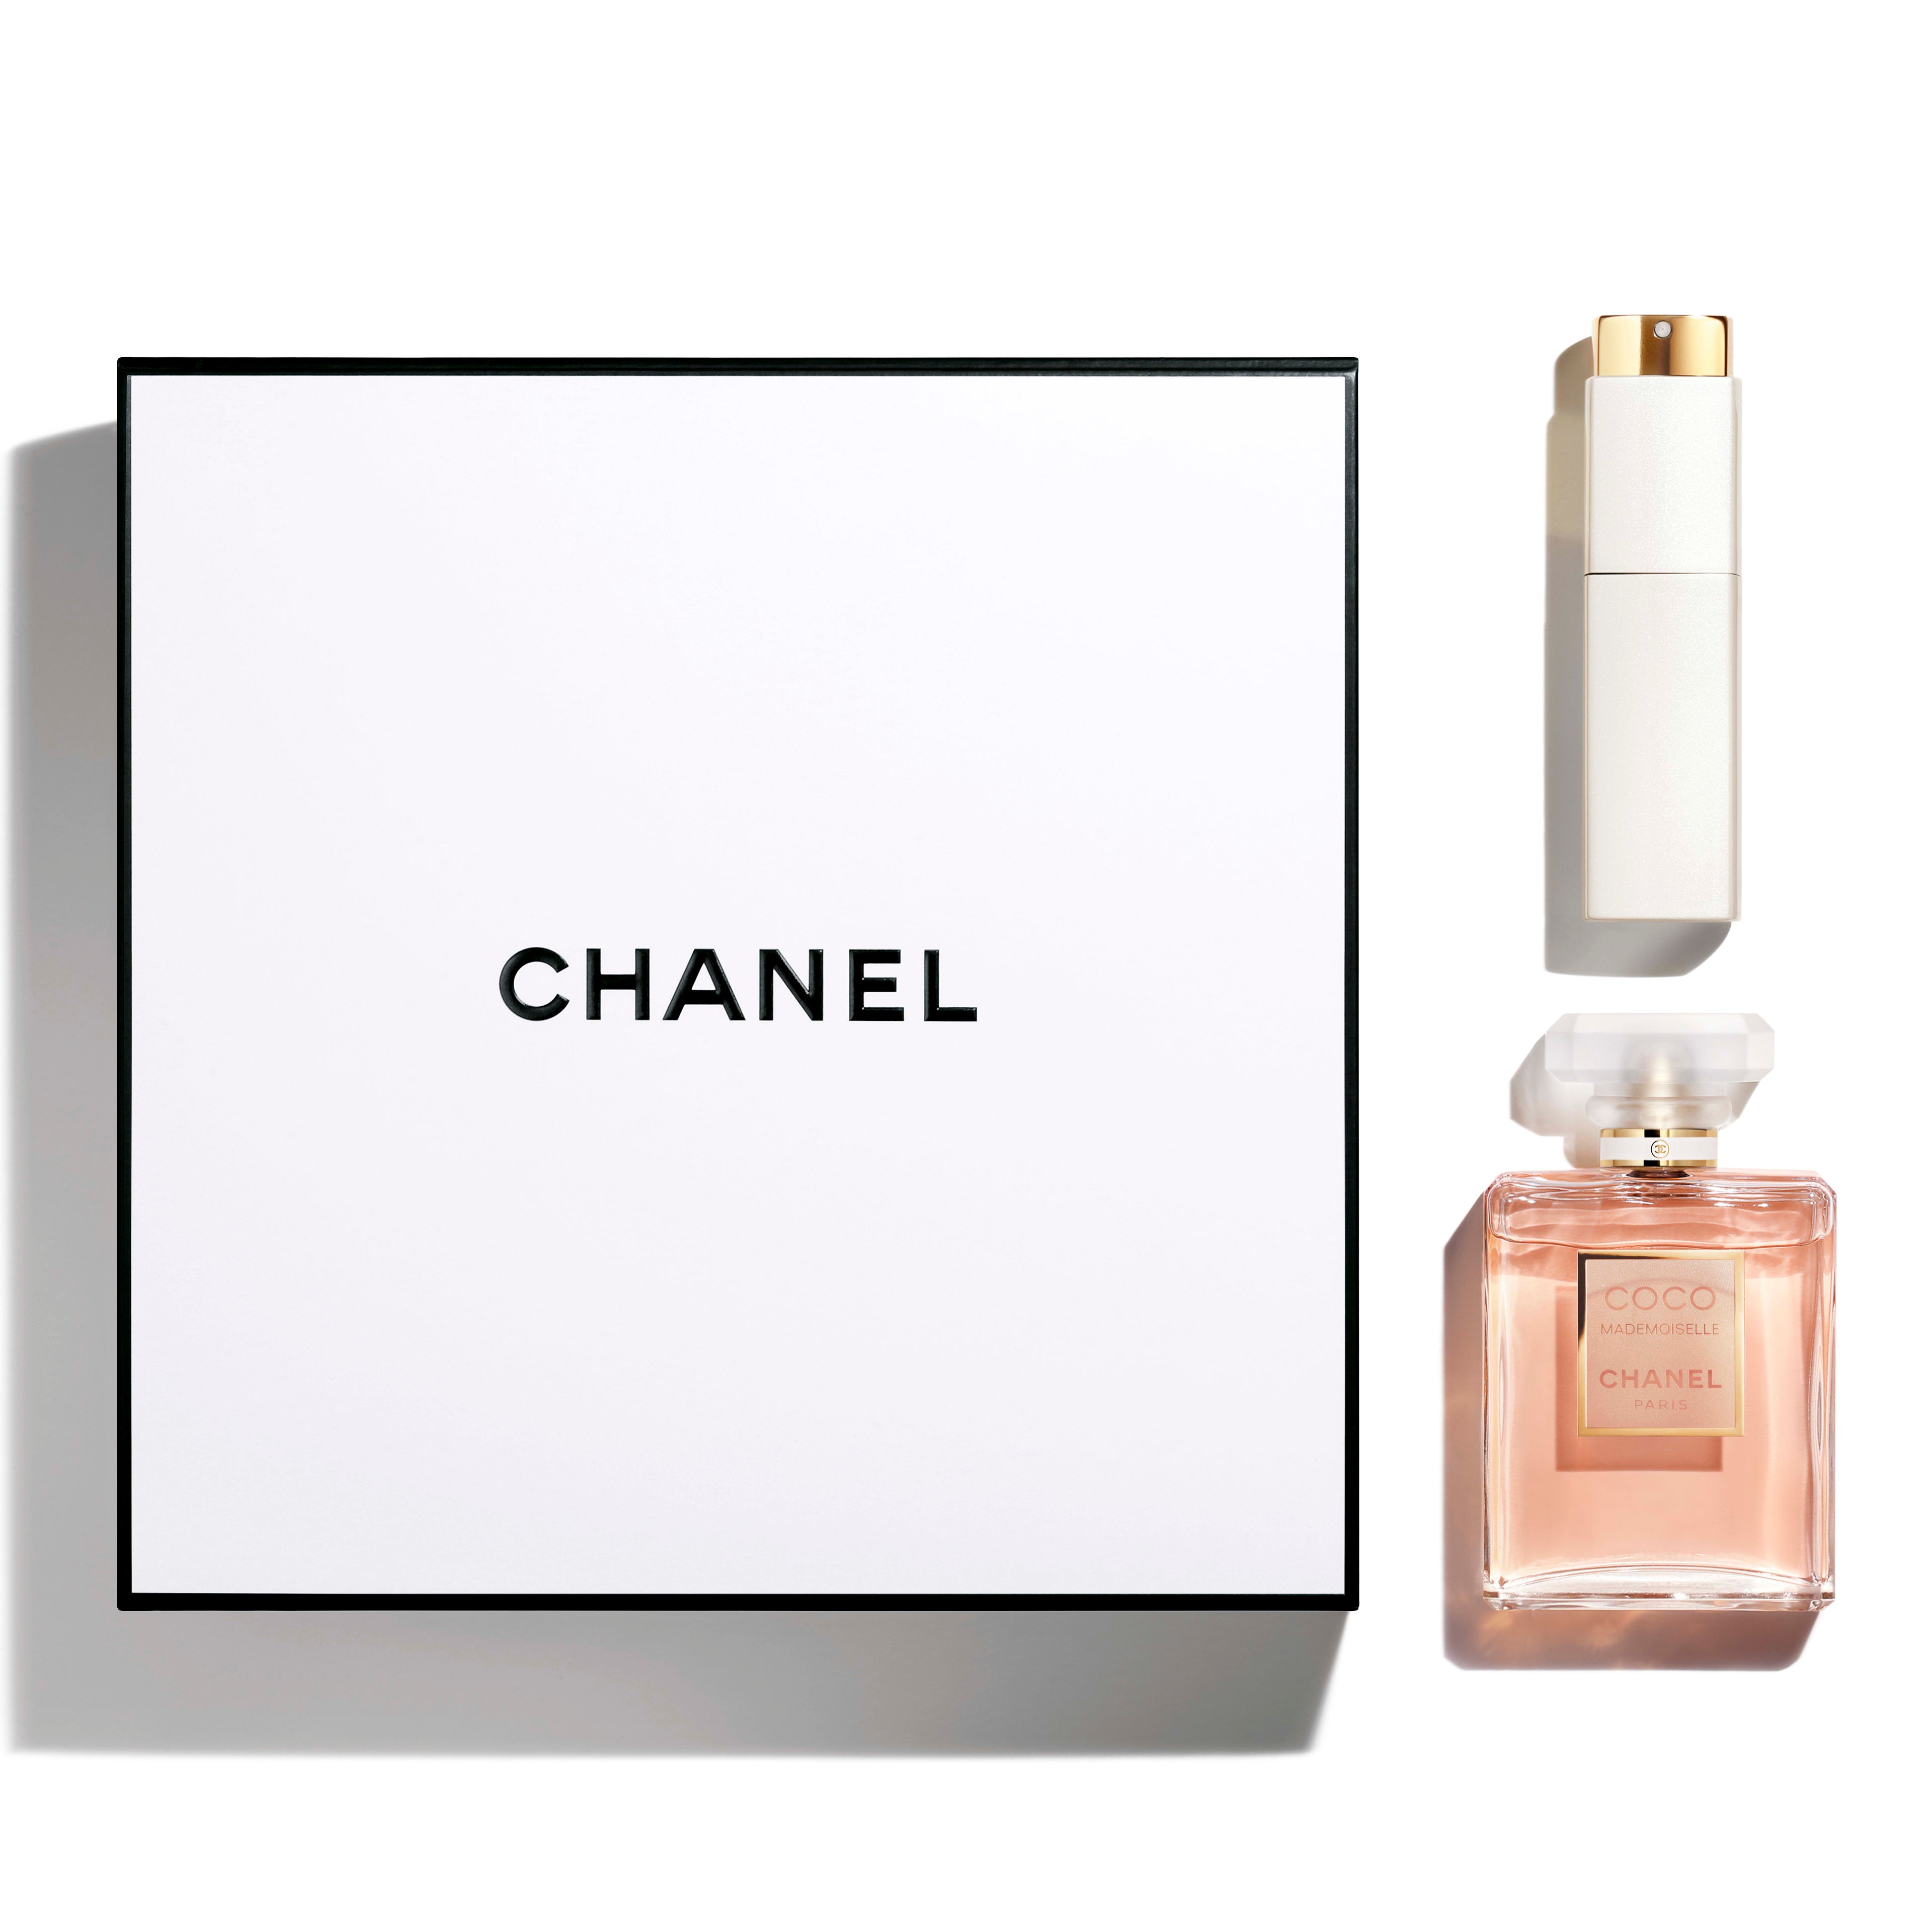 COCO CHANEL MADEMOISELLE Gift Set 2 pcs Eau de Parfum 3.4oz